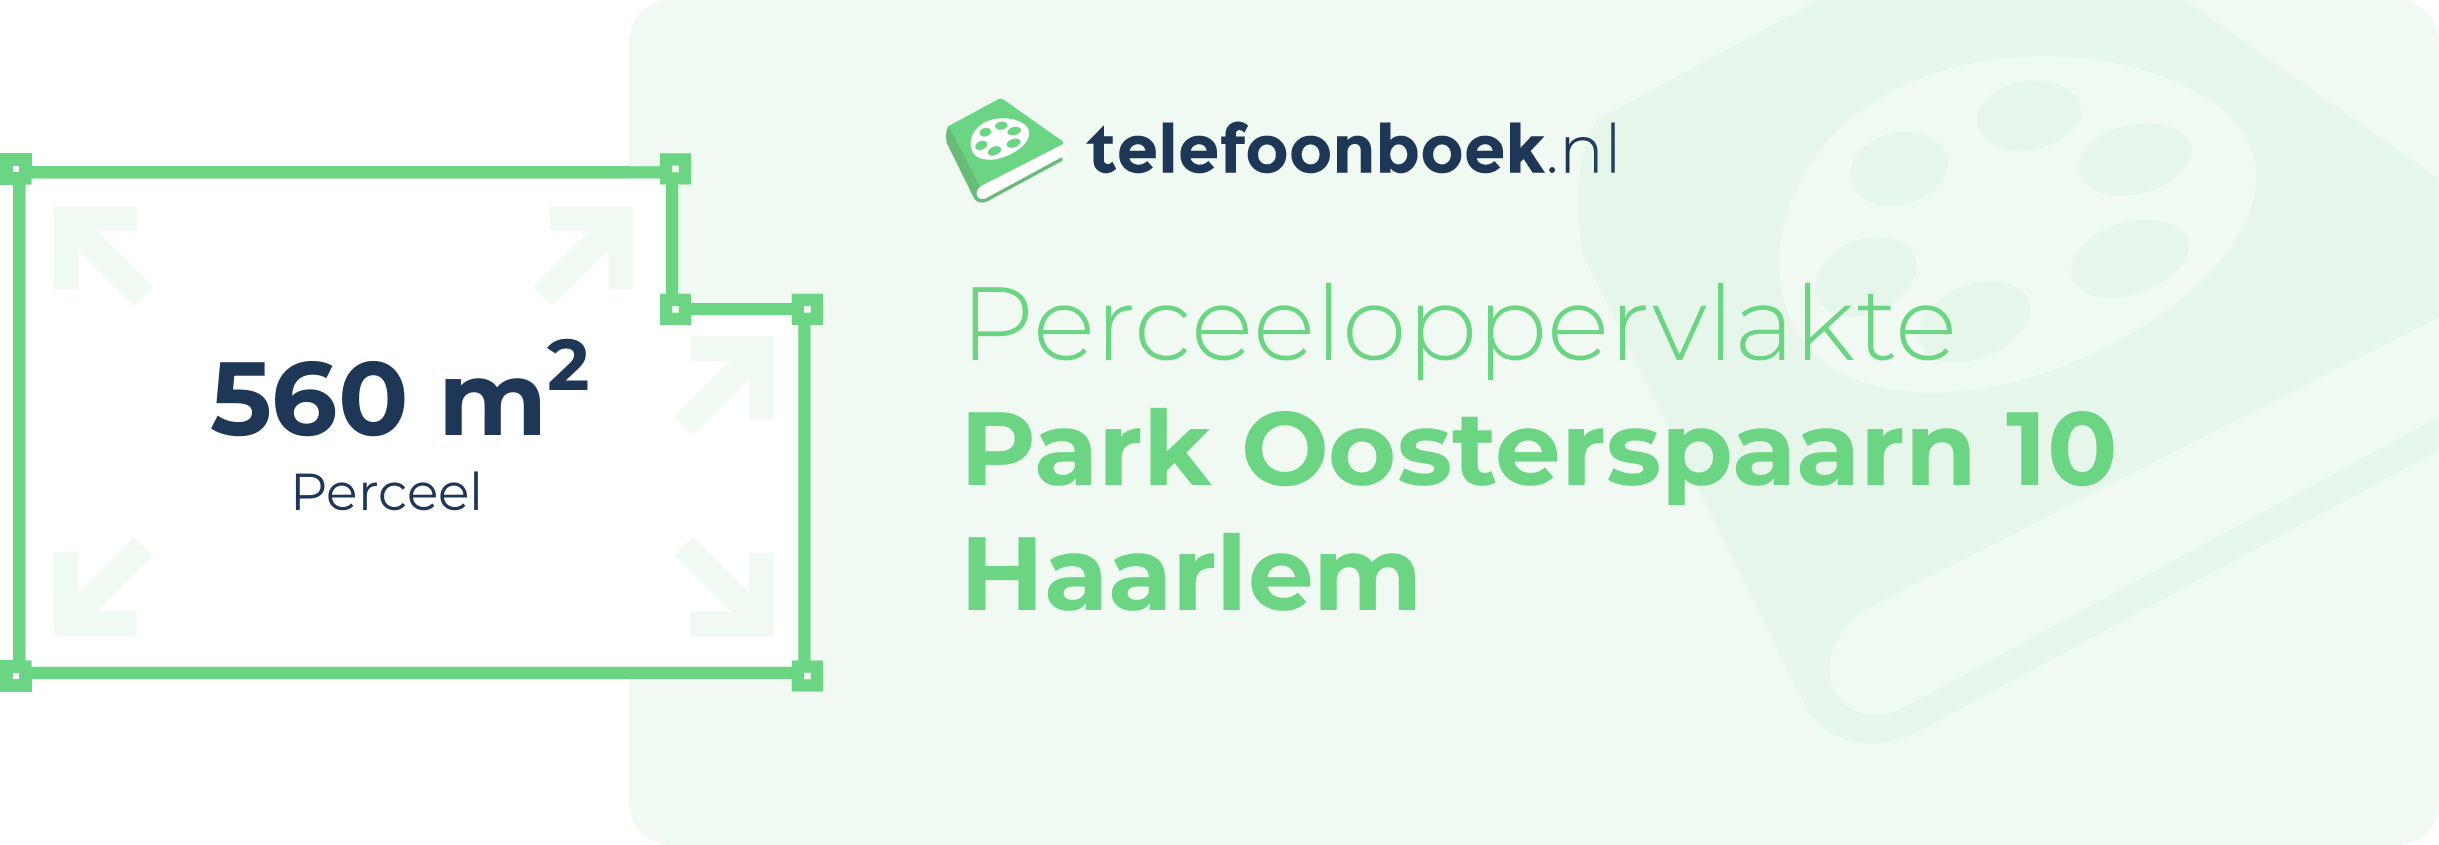 Perceeloppervlakte Park Oosterspaarn 10 Haarlem